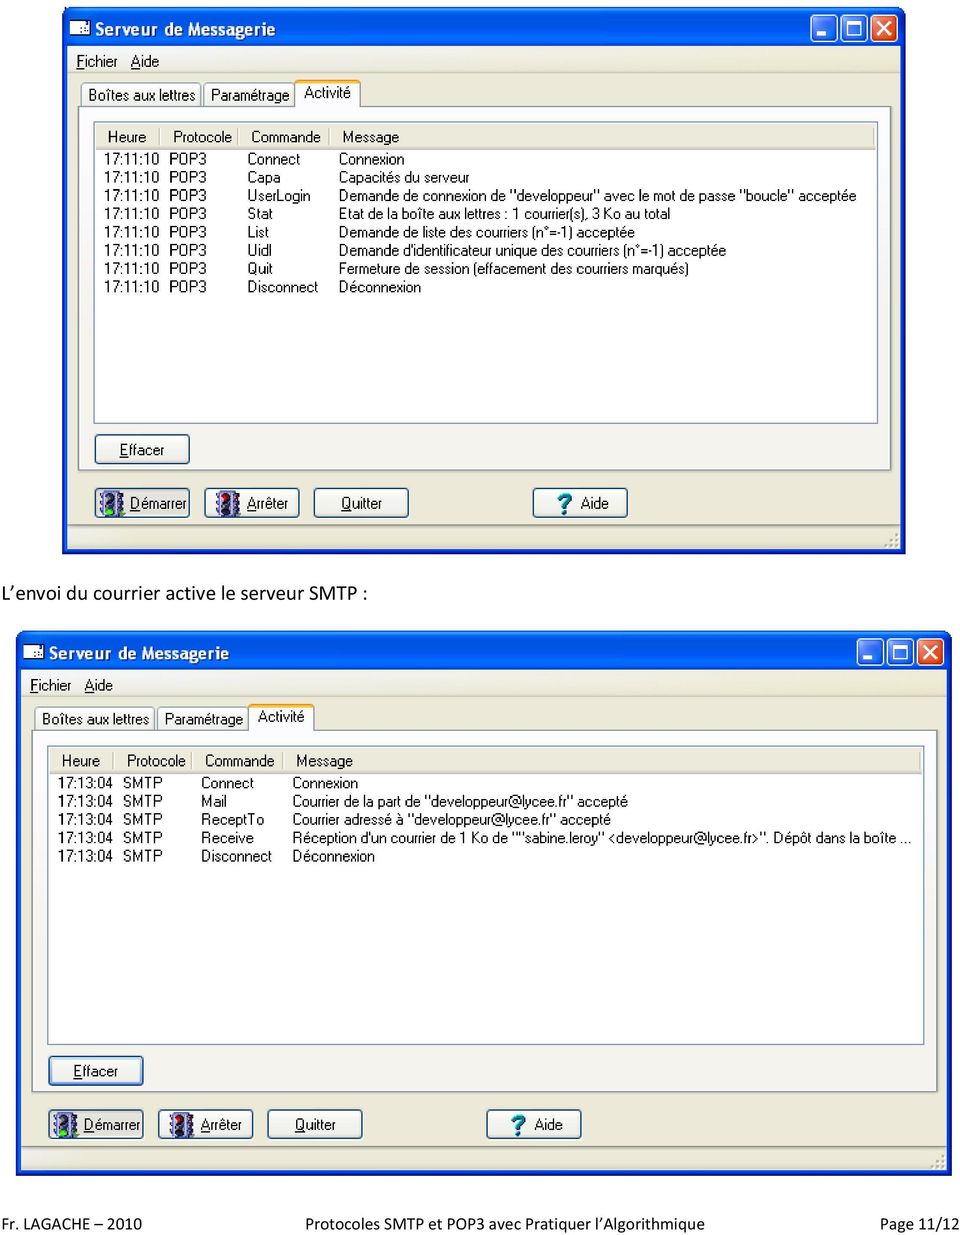 LAGACHE 2010 Protocoles SMTP et